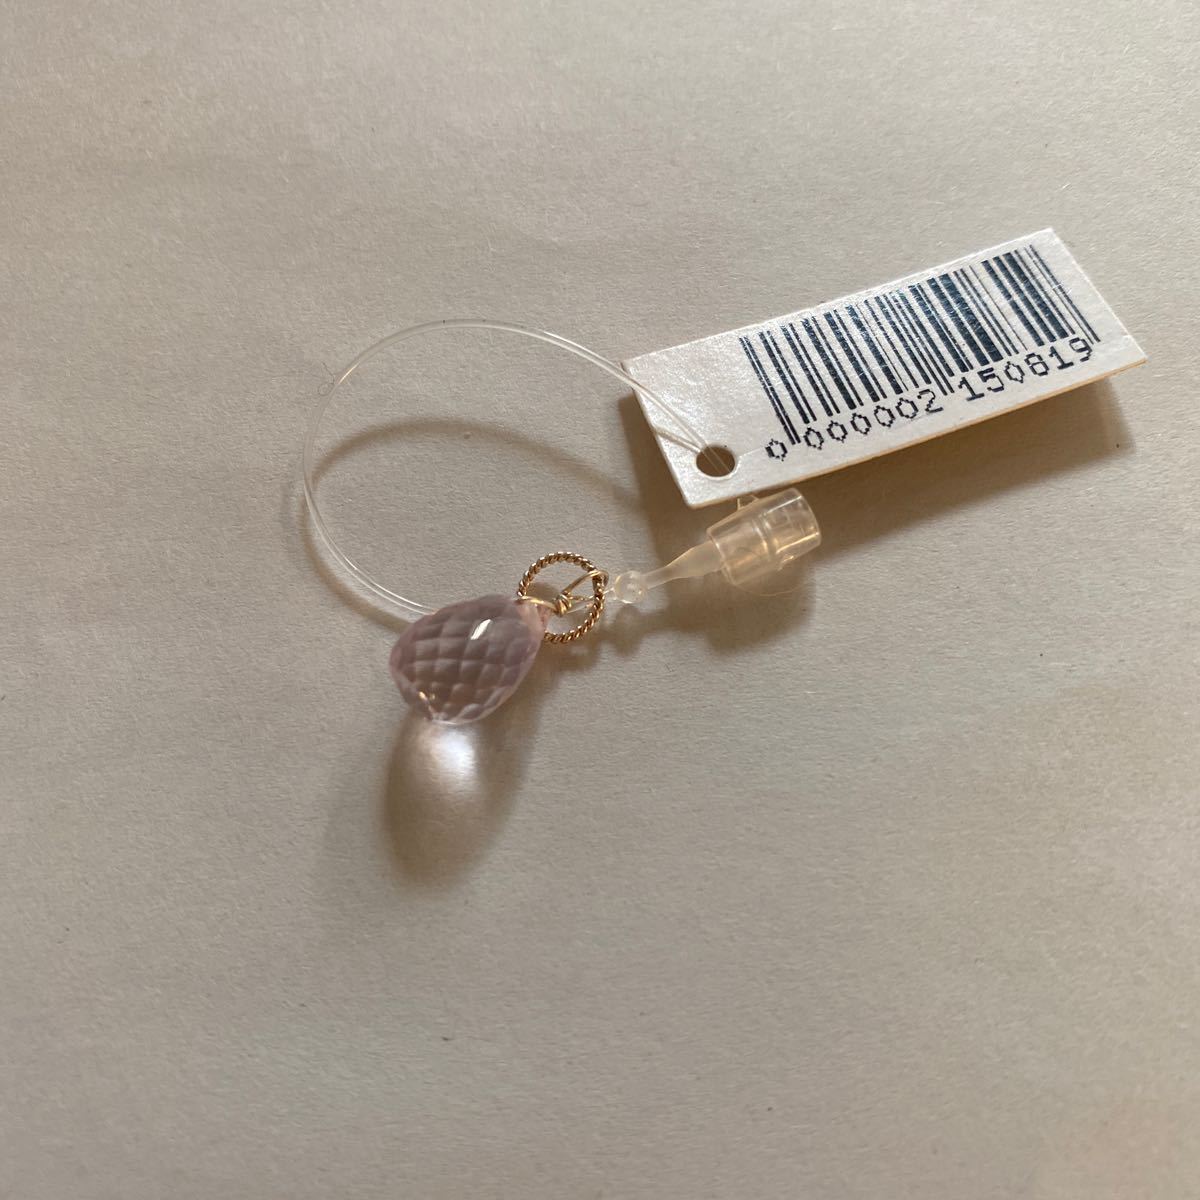  натуральный камень подвеска с цепью детали бисер розовый аметист +SV камень примерно 9× ширина примерно 7mm Power Stone Pink amethyst charm gemstone. type cut 